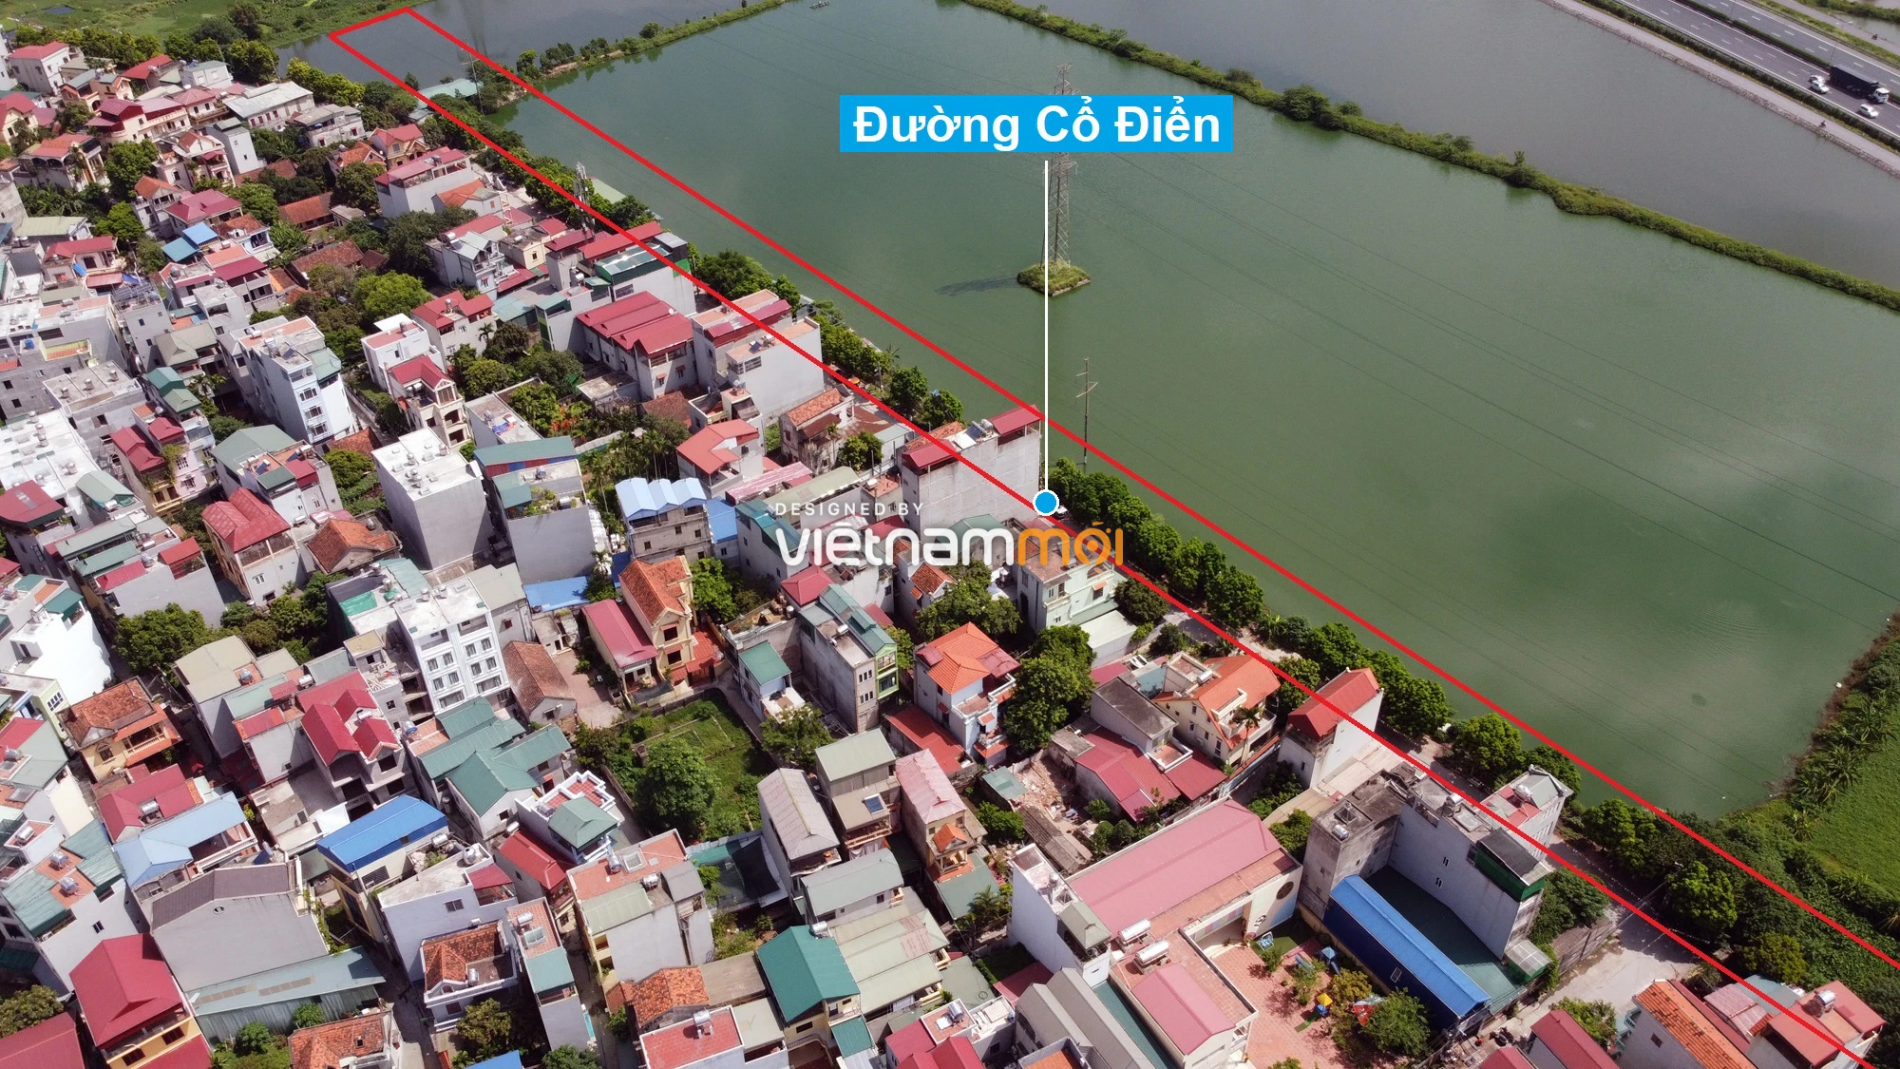 Những khu đất sắp thu hồi để mở đường ở xã Tứ Hiệp, Thanh Trì, Hà Nội (phần 5) - Ảnh 11.